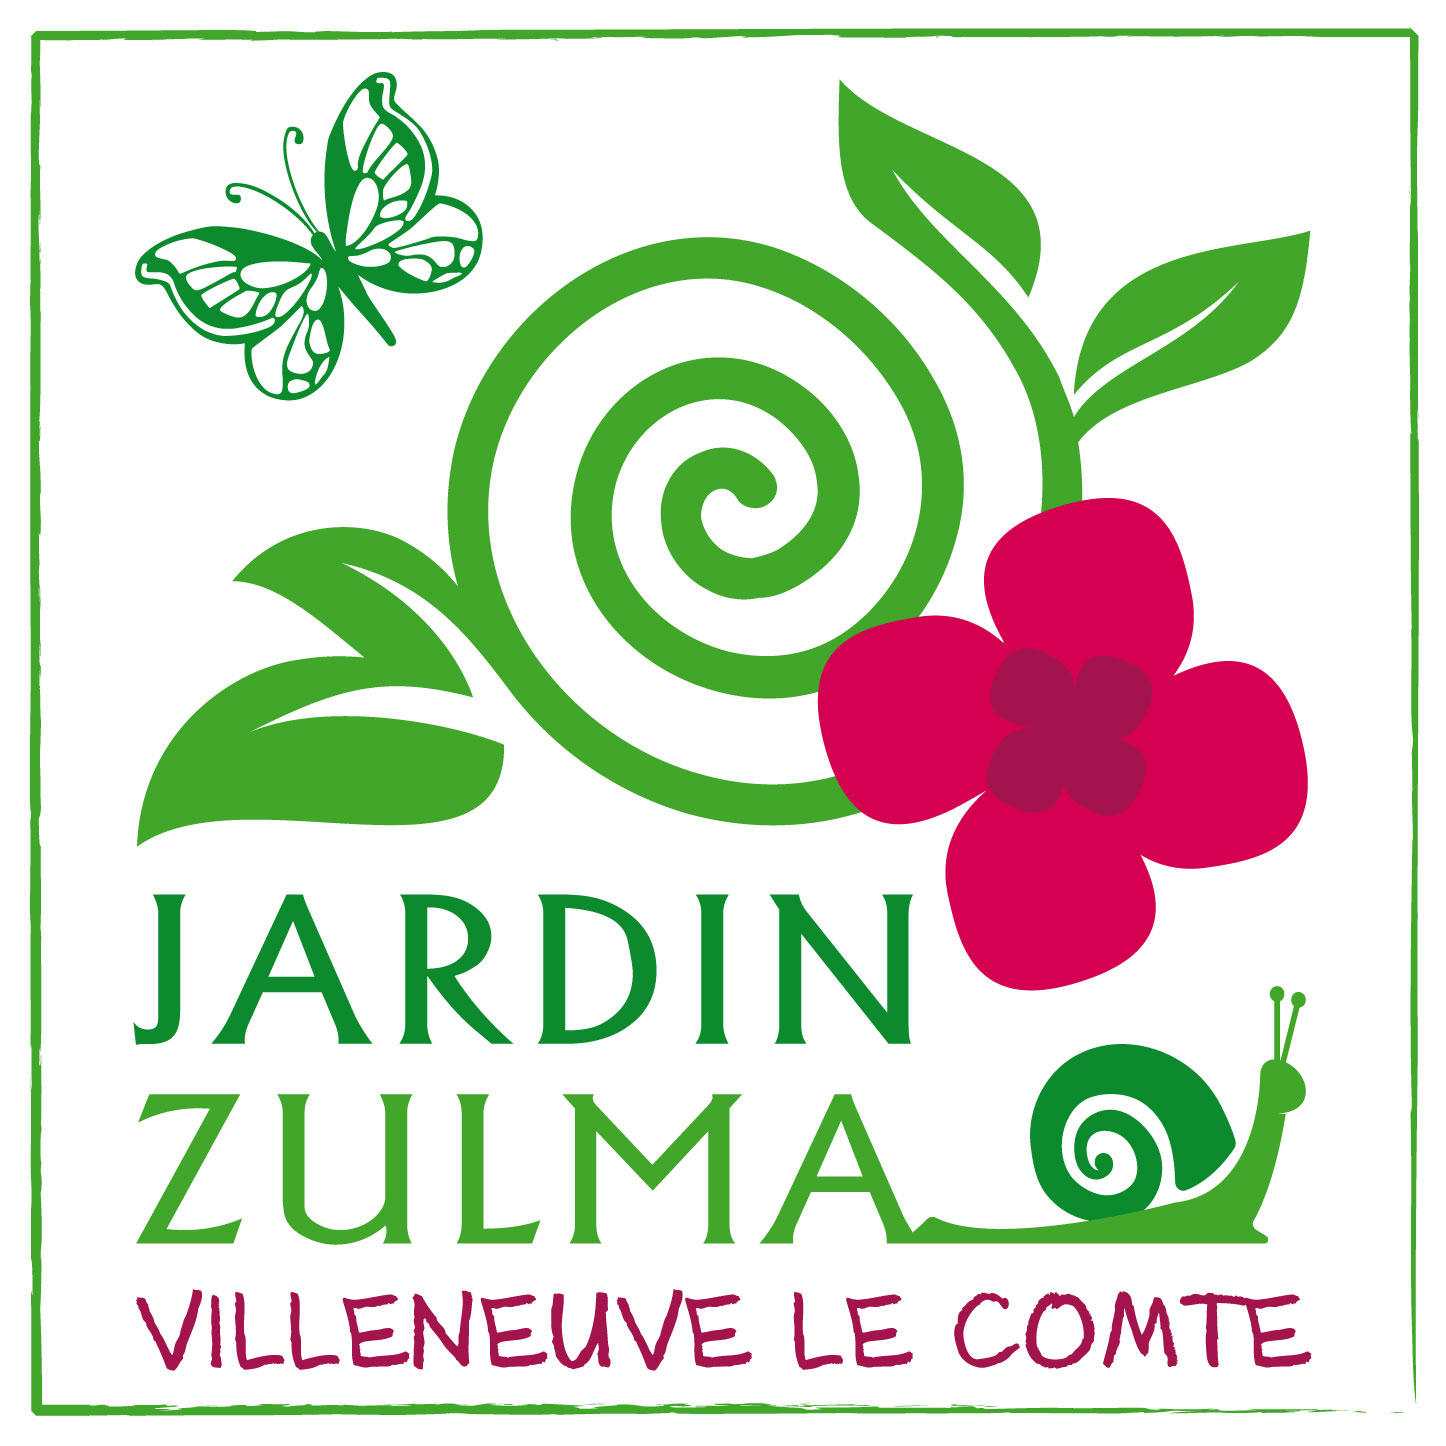 JardinZULMA_log_def.jpg